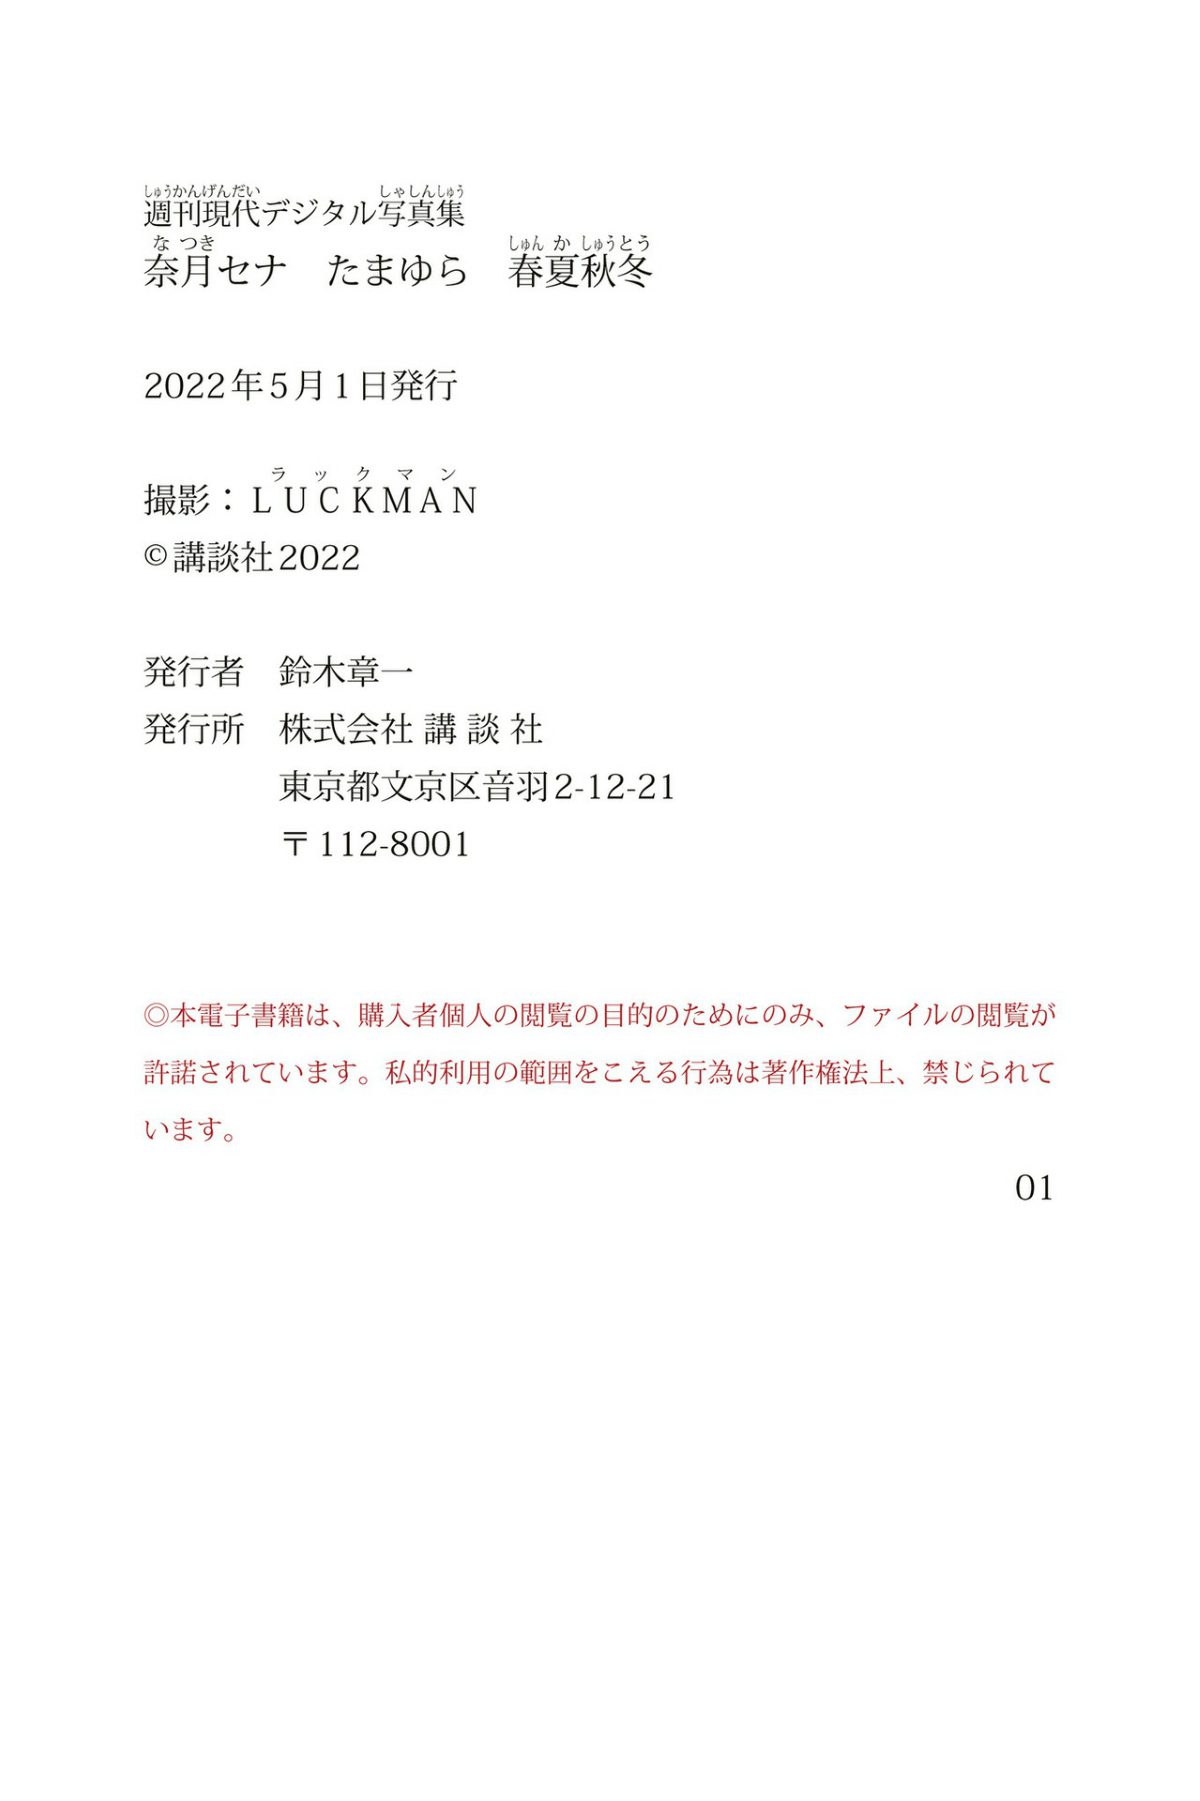 Weekly Gendai Photobook 2022 04 26 Sena Natsuki 奈月セナ Tamayura Spring Summer Autumn Winter たまゆら 春夏秋冬 113 9249629526.jpg